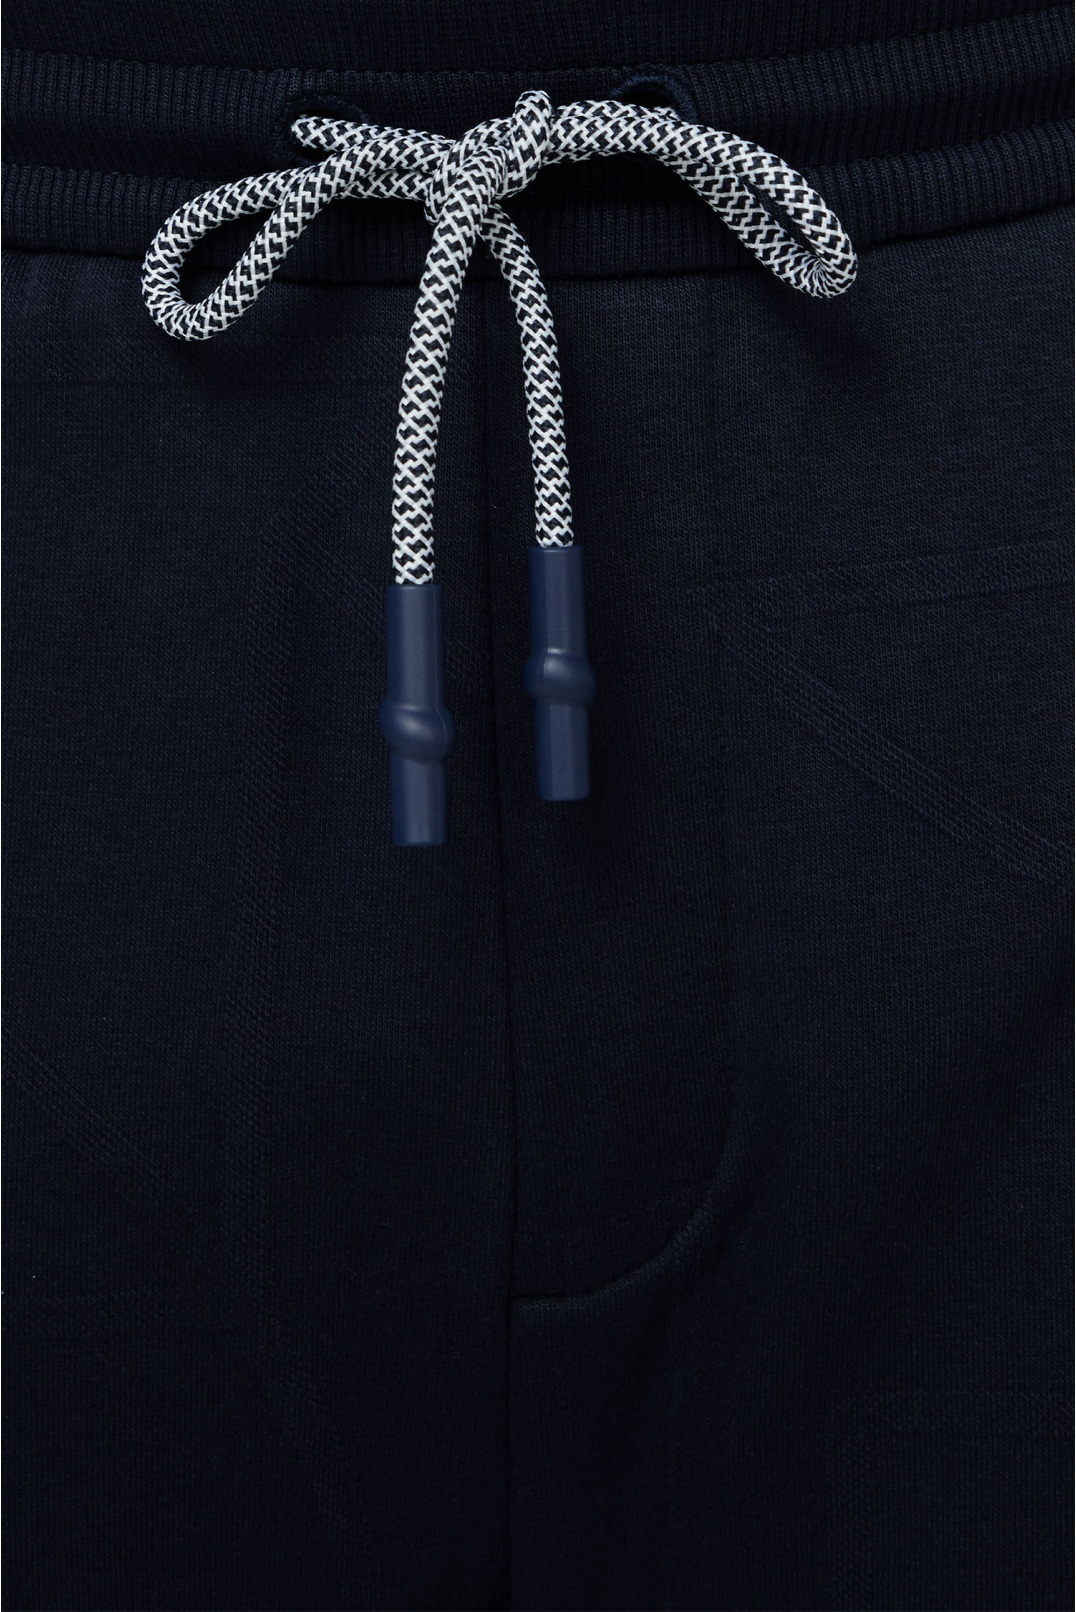 Чоловічий темно-синій спортивний костюм з візерунком (кофта, штани) - 4